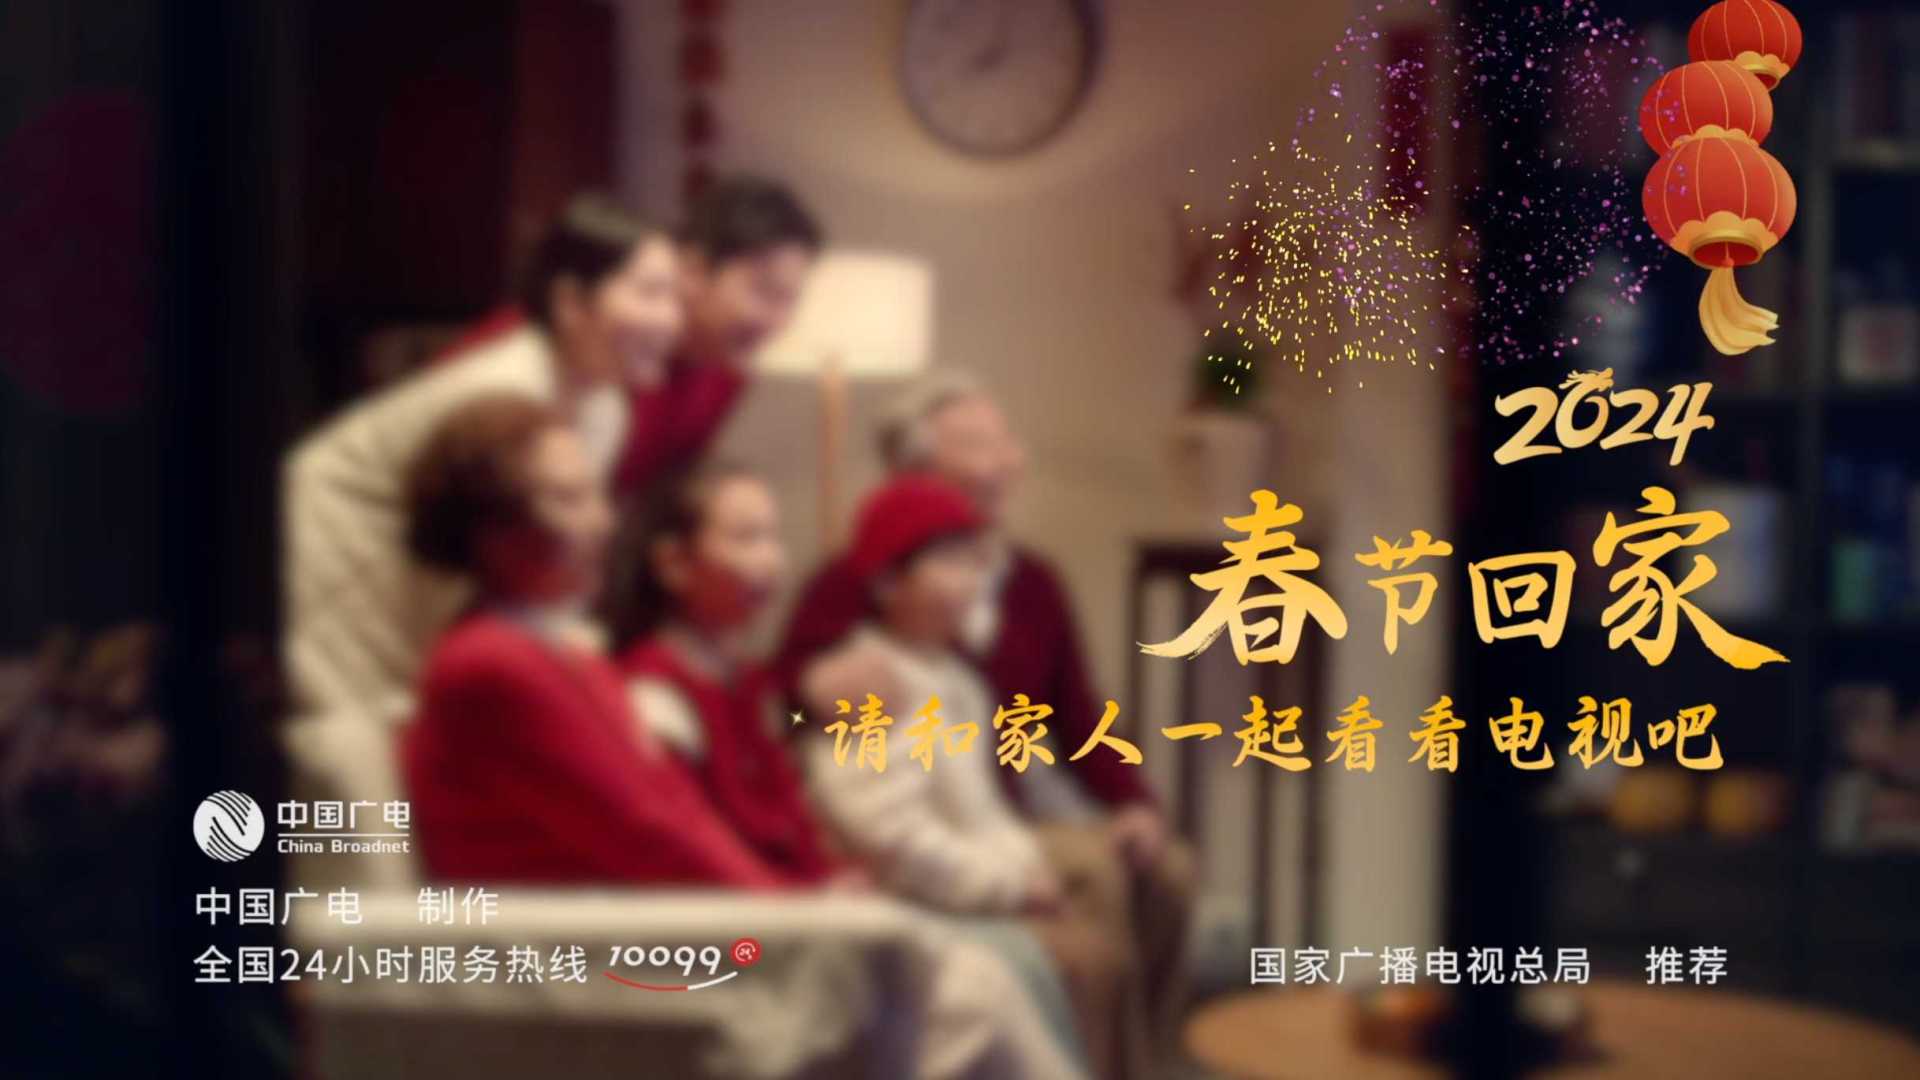 中国广电 《便捷看电视》公益广告-DIR 导演版